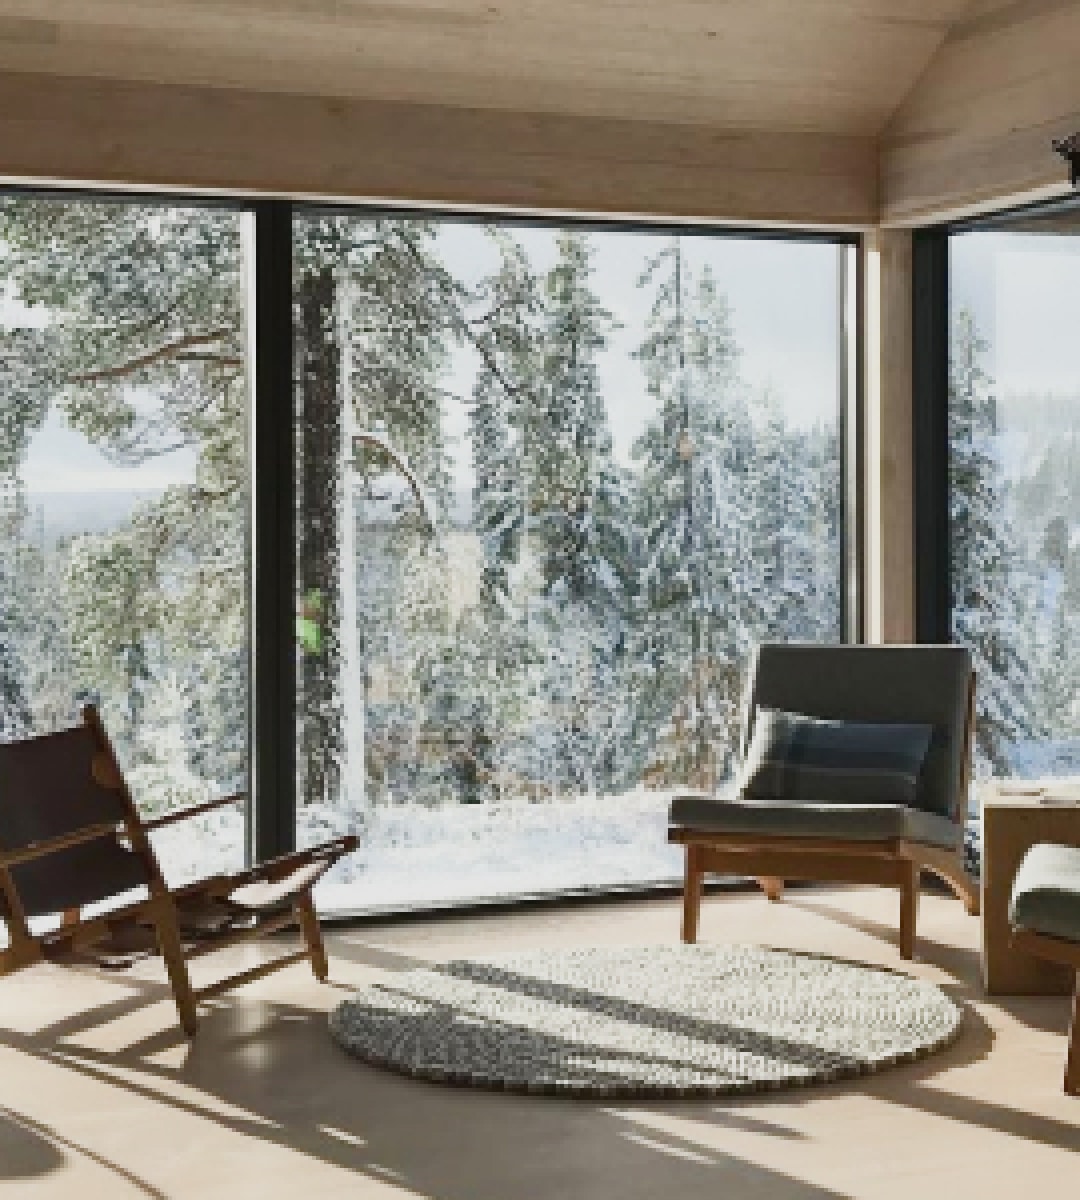 Вид с окна на зимний лес